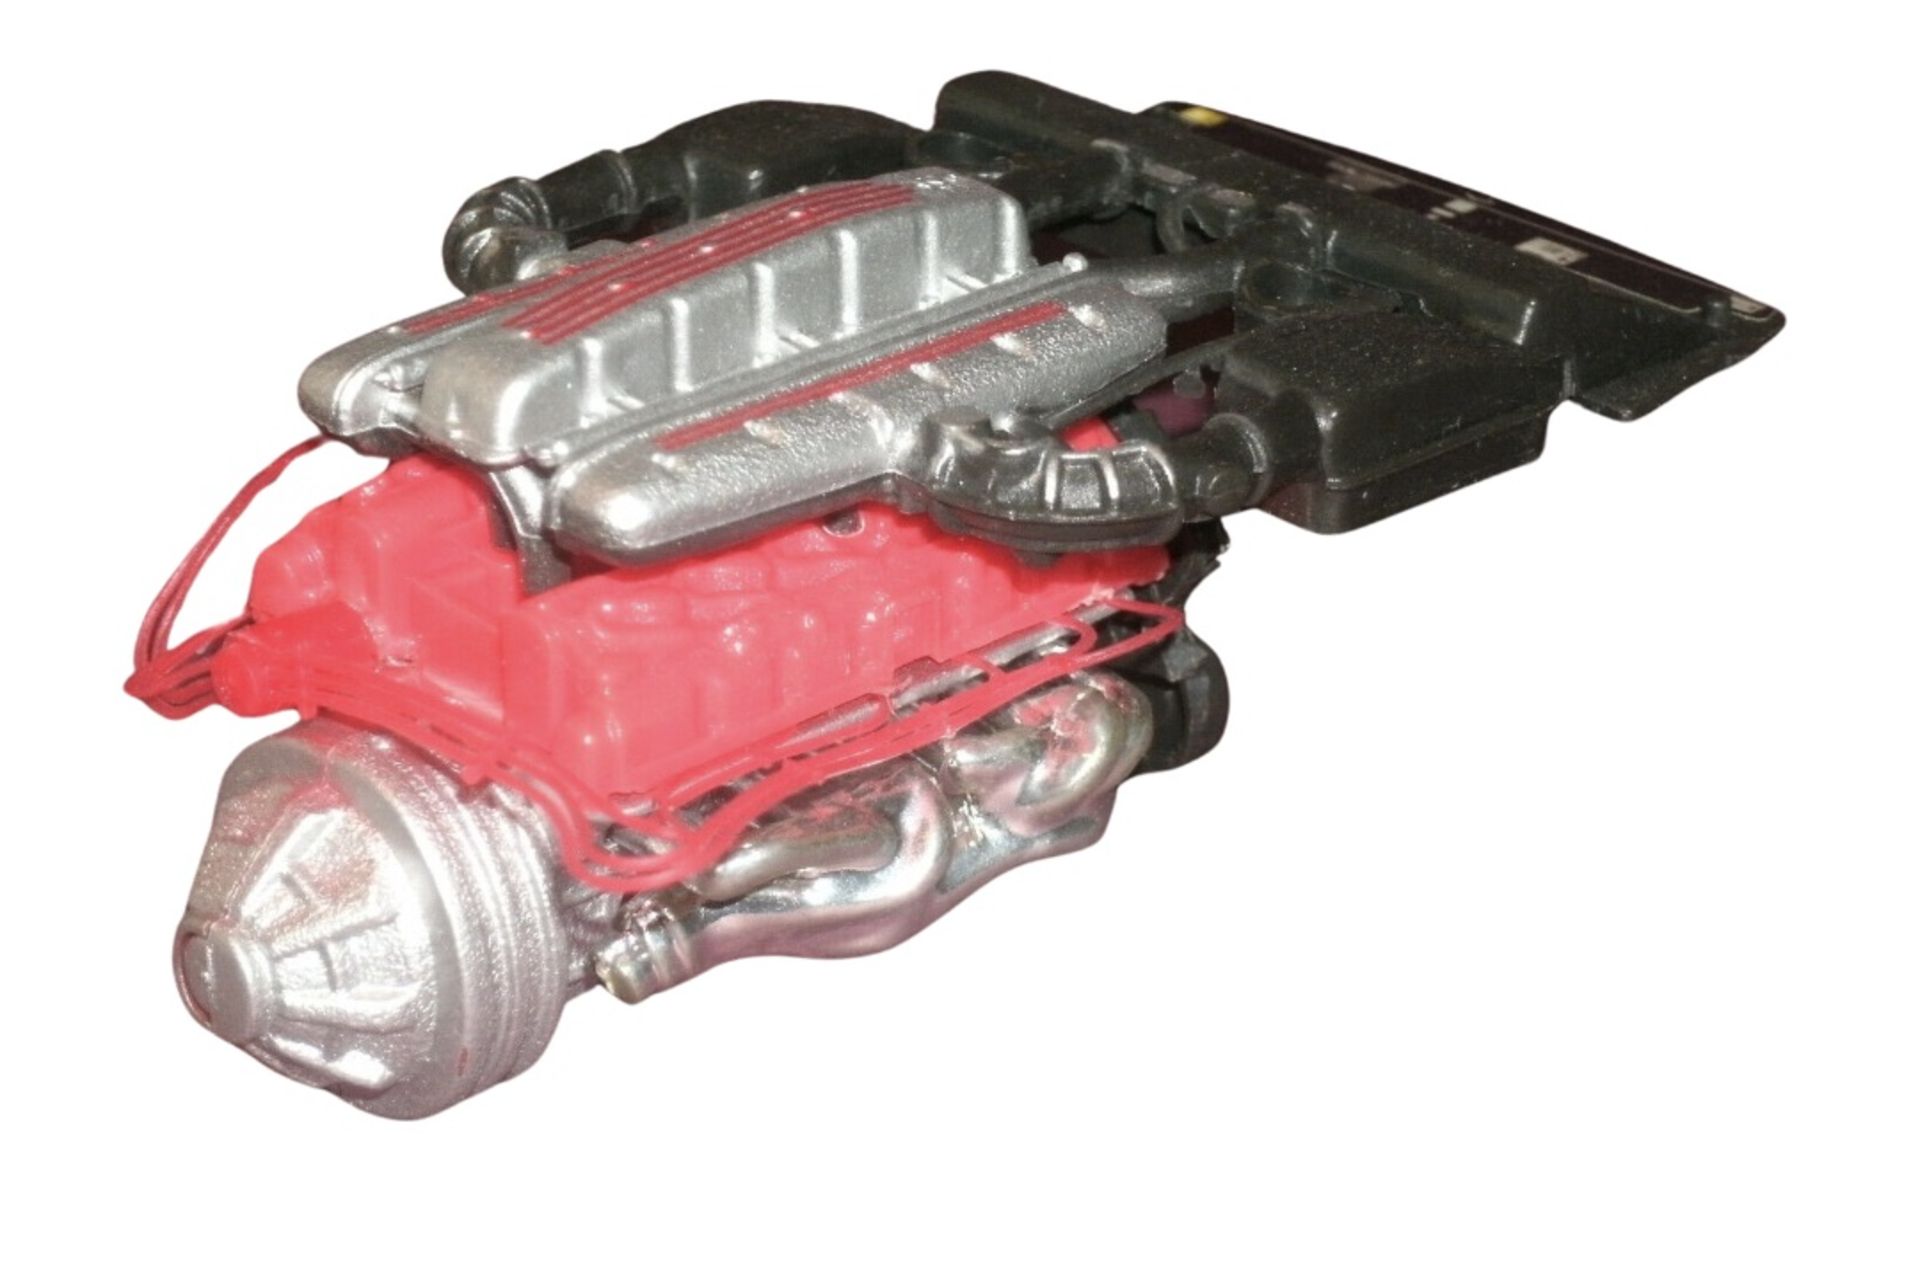 1/18 Scale Ferrari 550 Maranello 5.5L V12 Engine Display Desk Model - Image 3 of 6